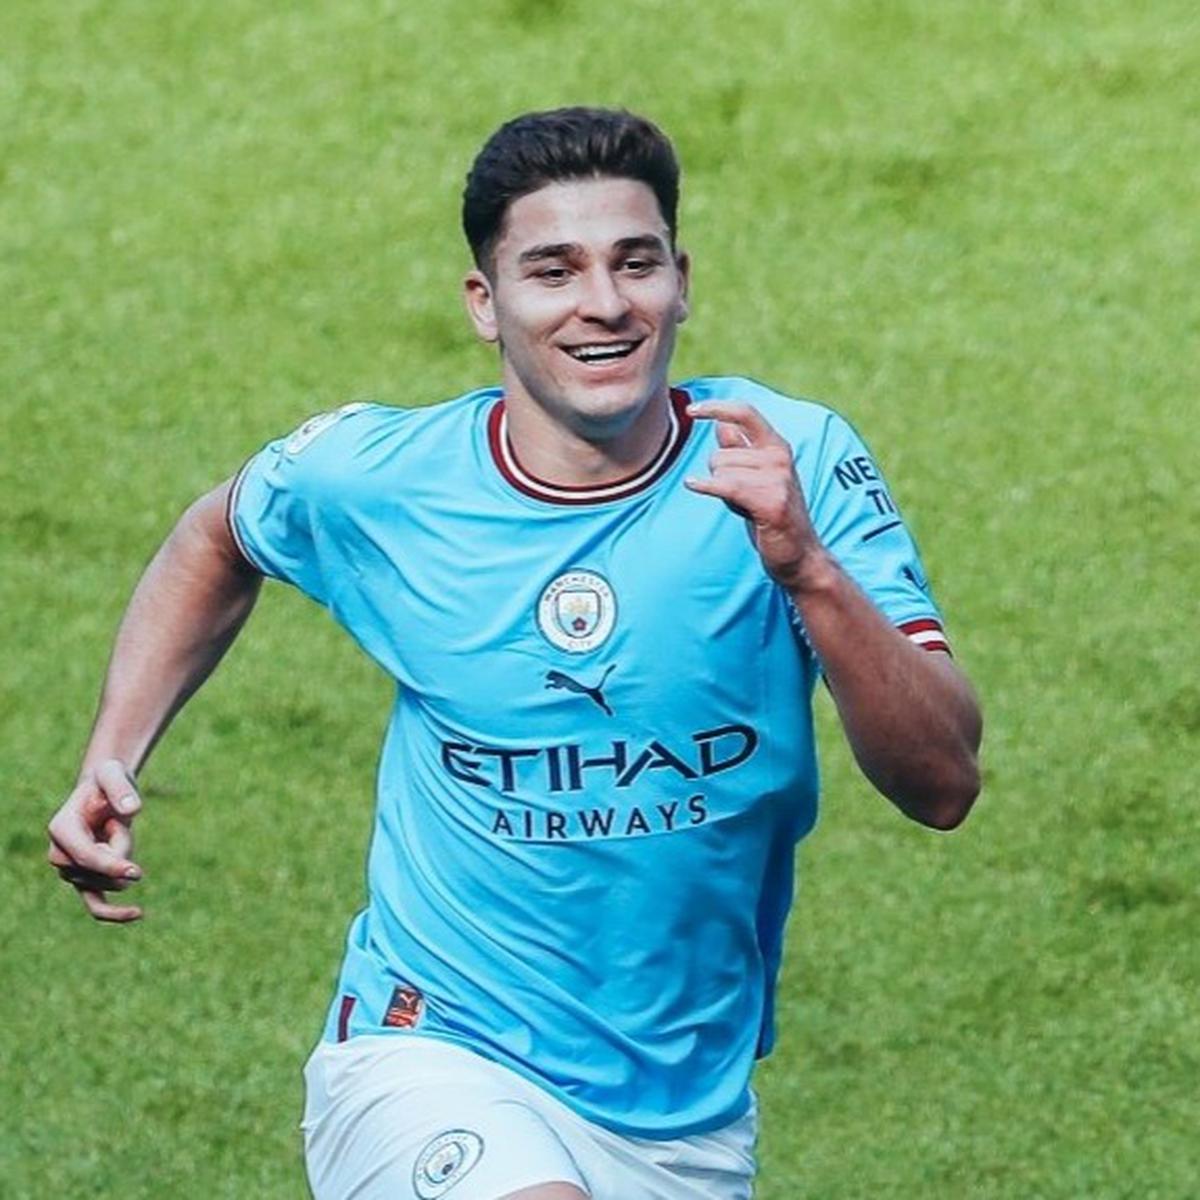 City bate Chelsea com golo de Julian Álvarez no primeiro jogo como campeão  - Premier League - SAPO Desporto